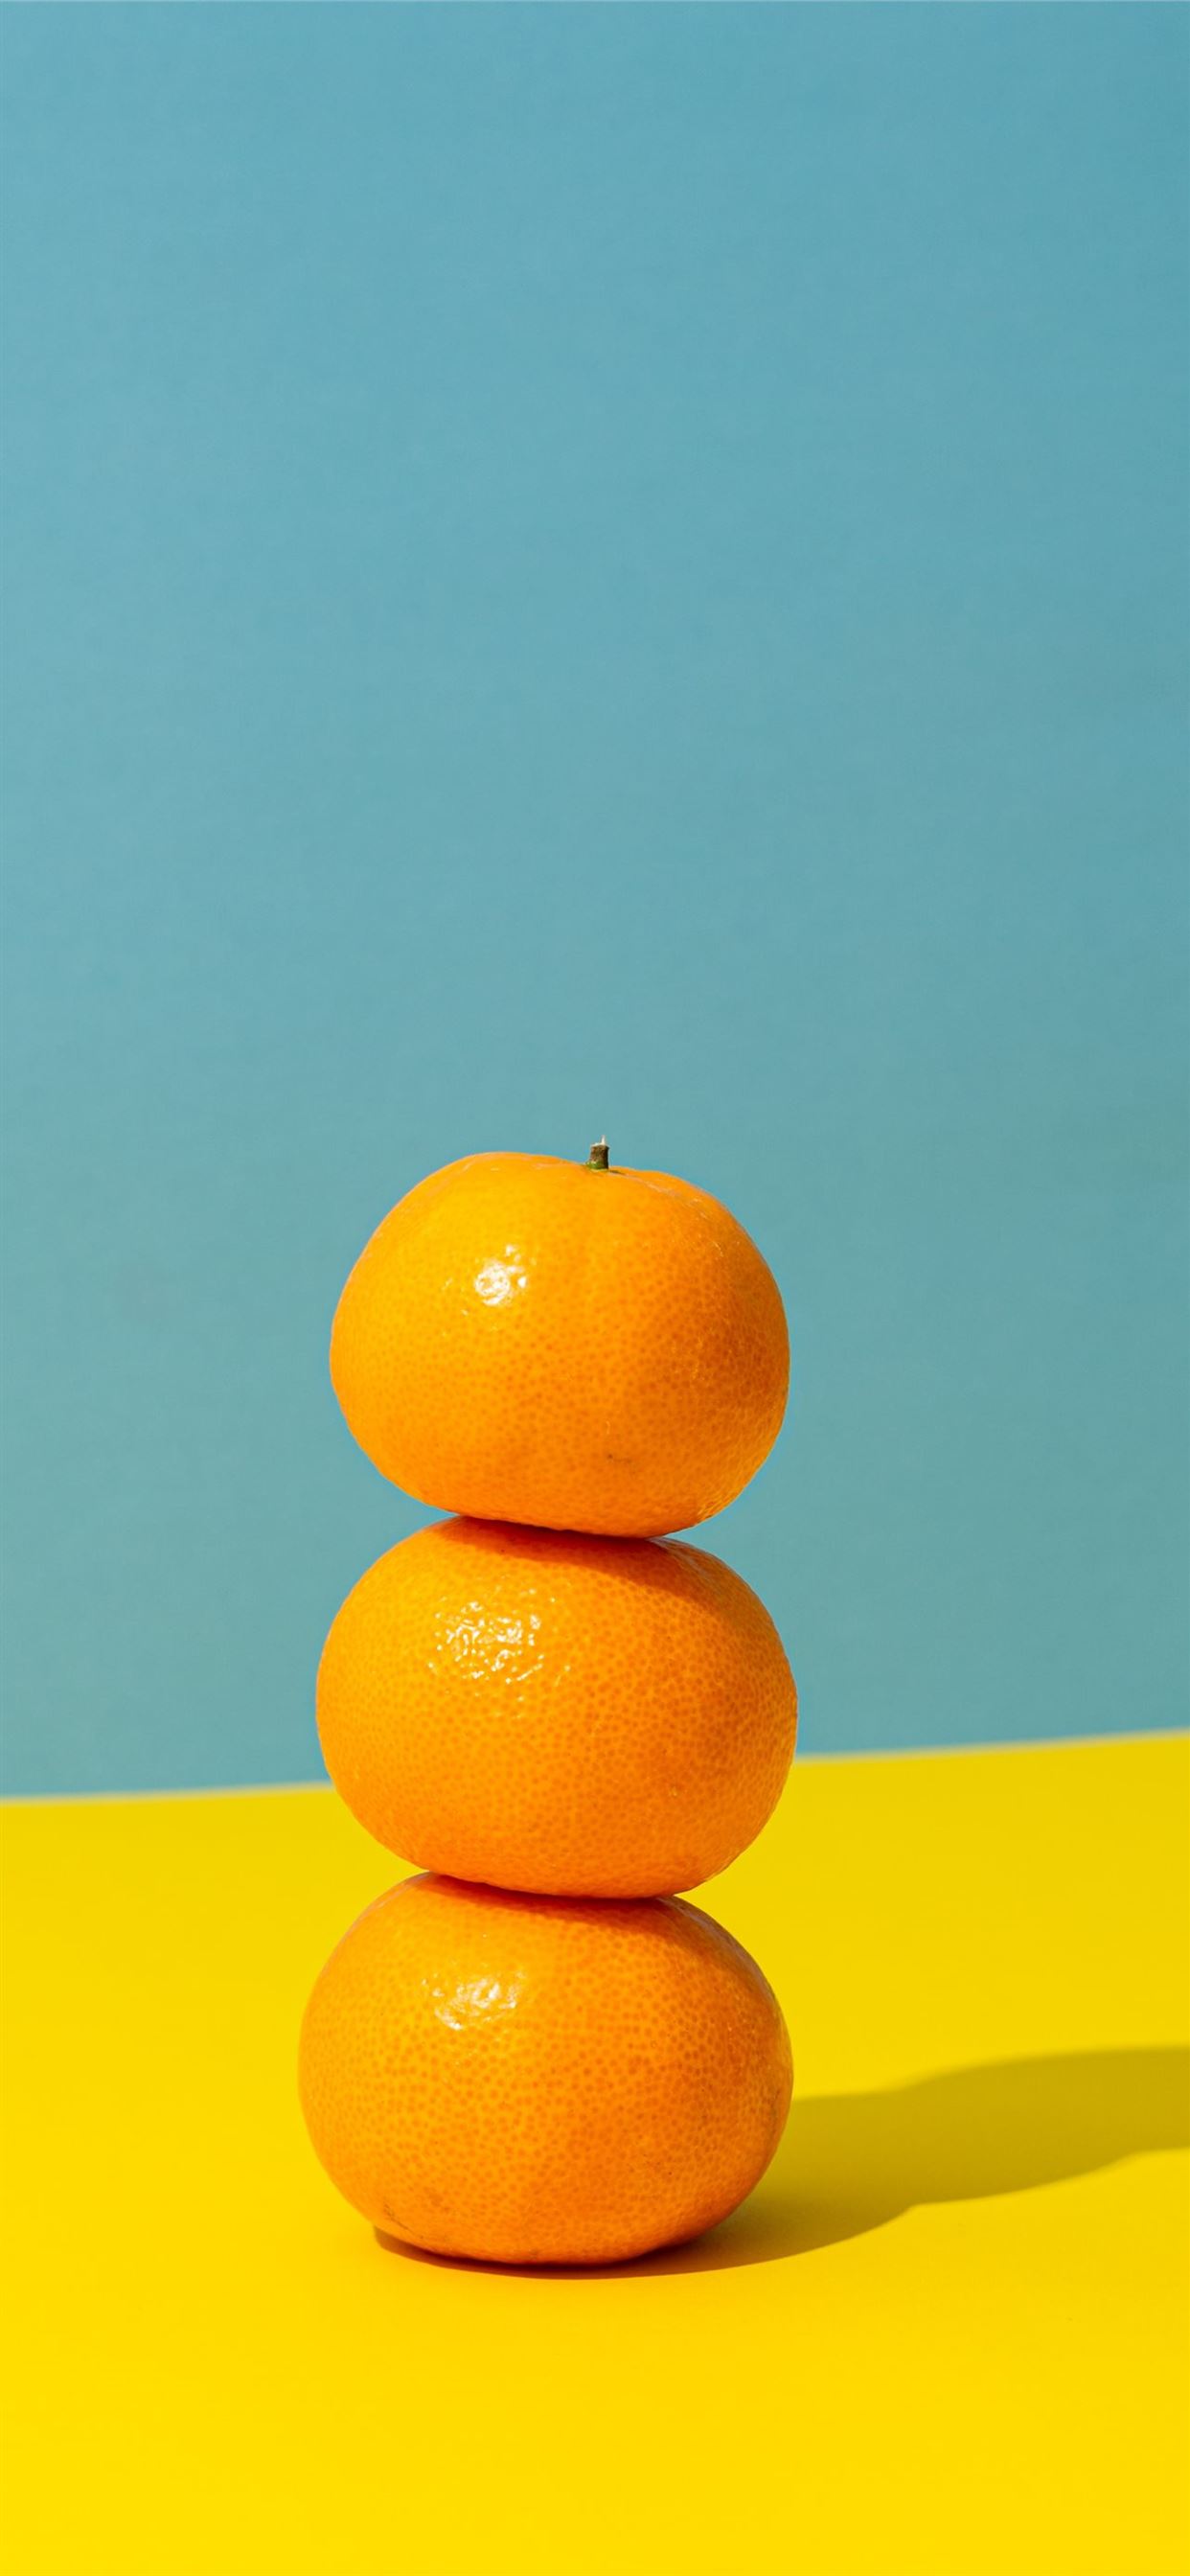 HD wallpaper Fruits Orange Yellow orange Fruit  Wallpaper Flare